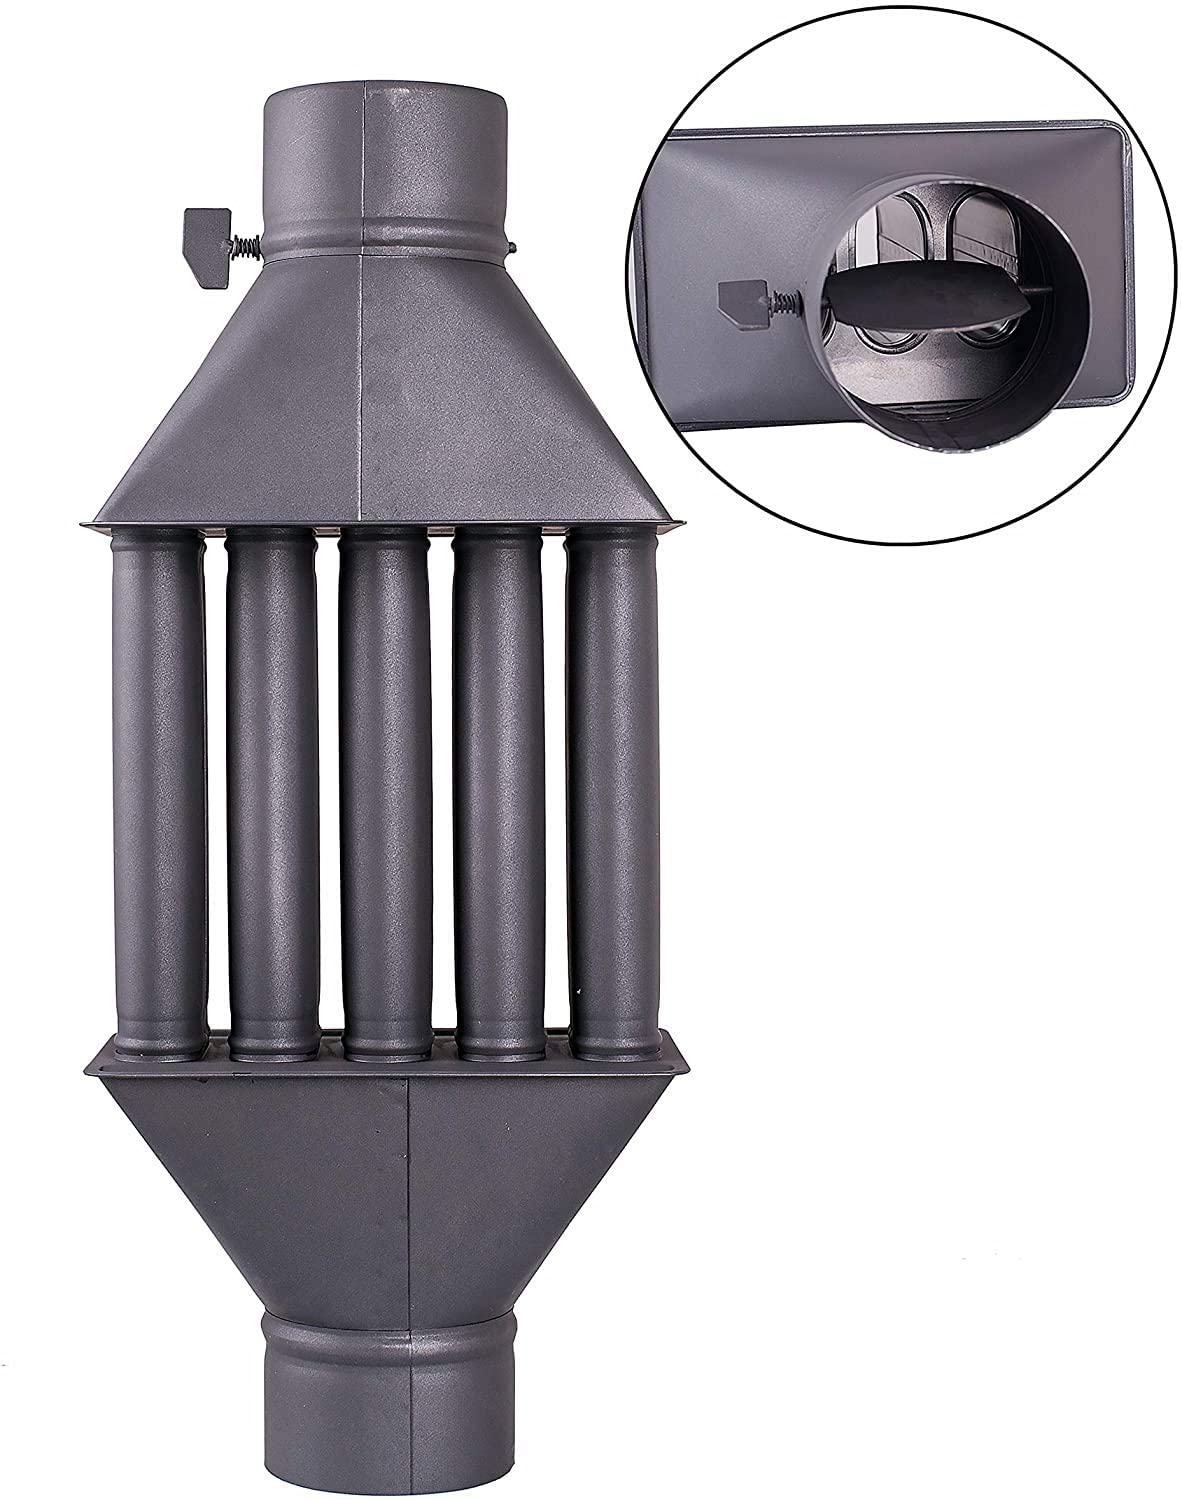 ᐉ Warmlufttauscher für Holzöfen, Rauchrohr-Wärmetauscher, 130mm Durchmesser